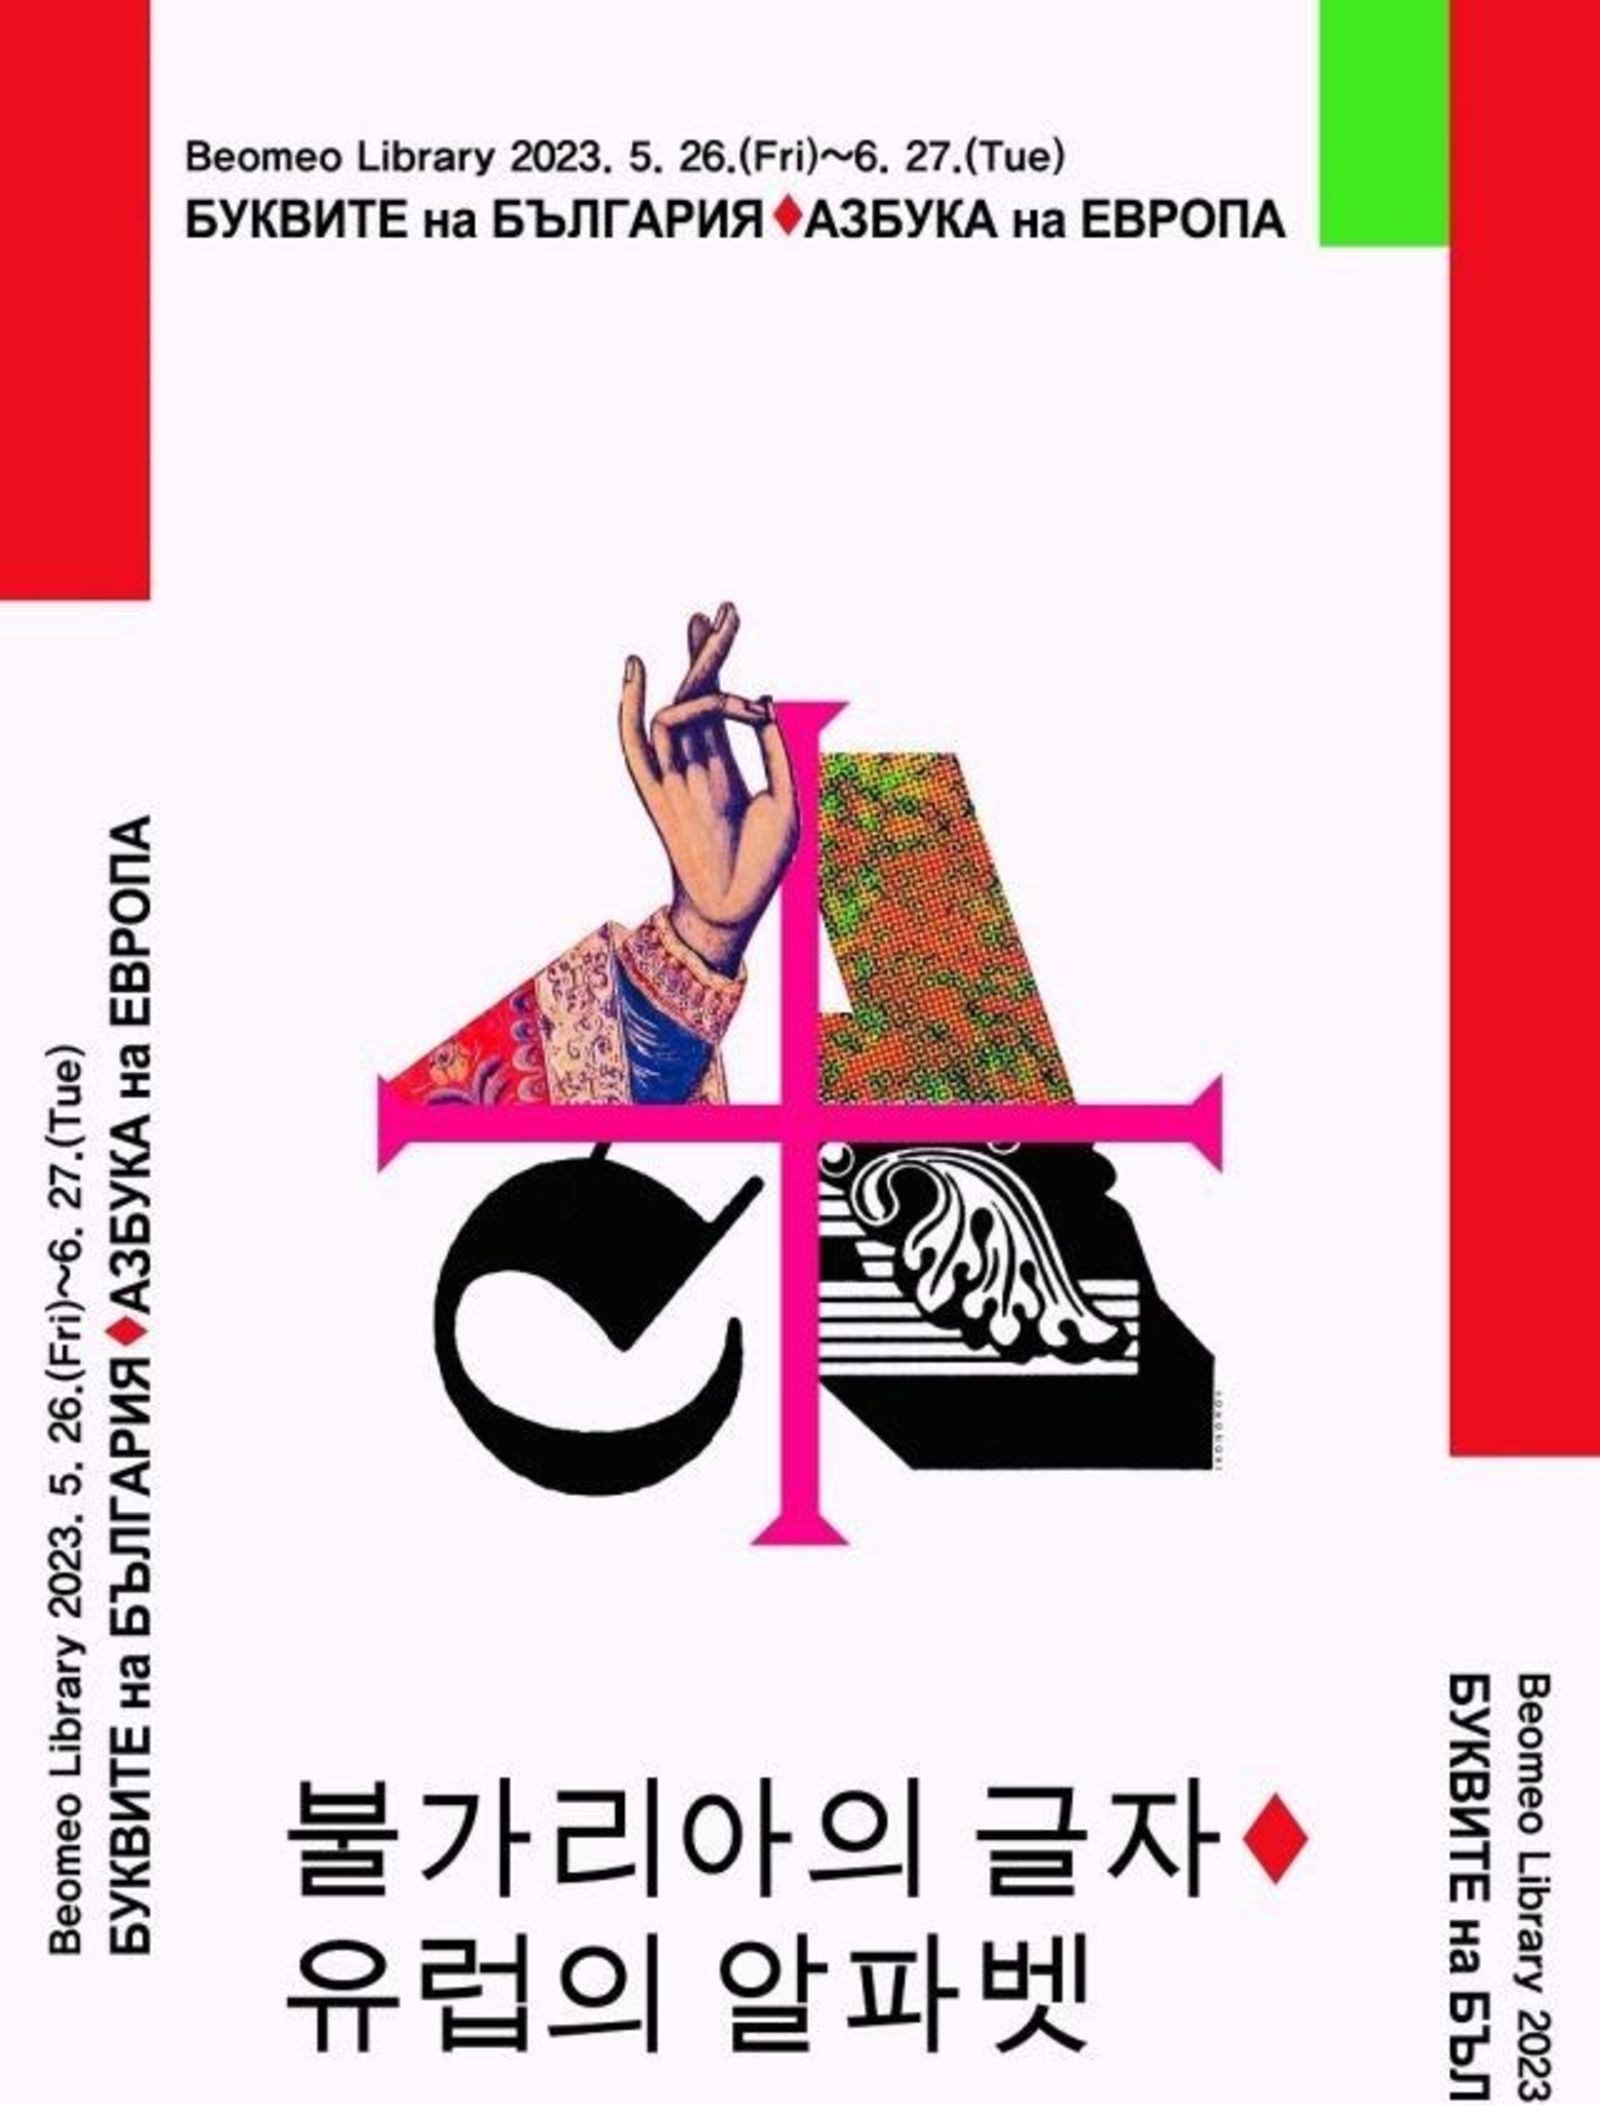 Month of Bulgarian culture in the city of Daegu, Republic of Korea, May 26 - June 30, 2023